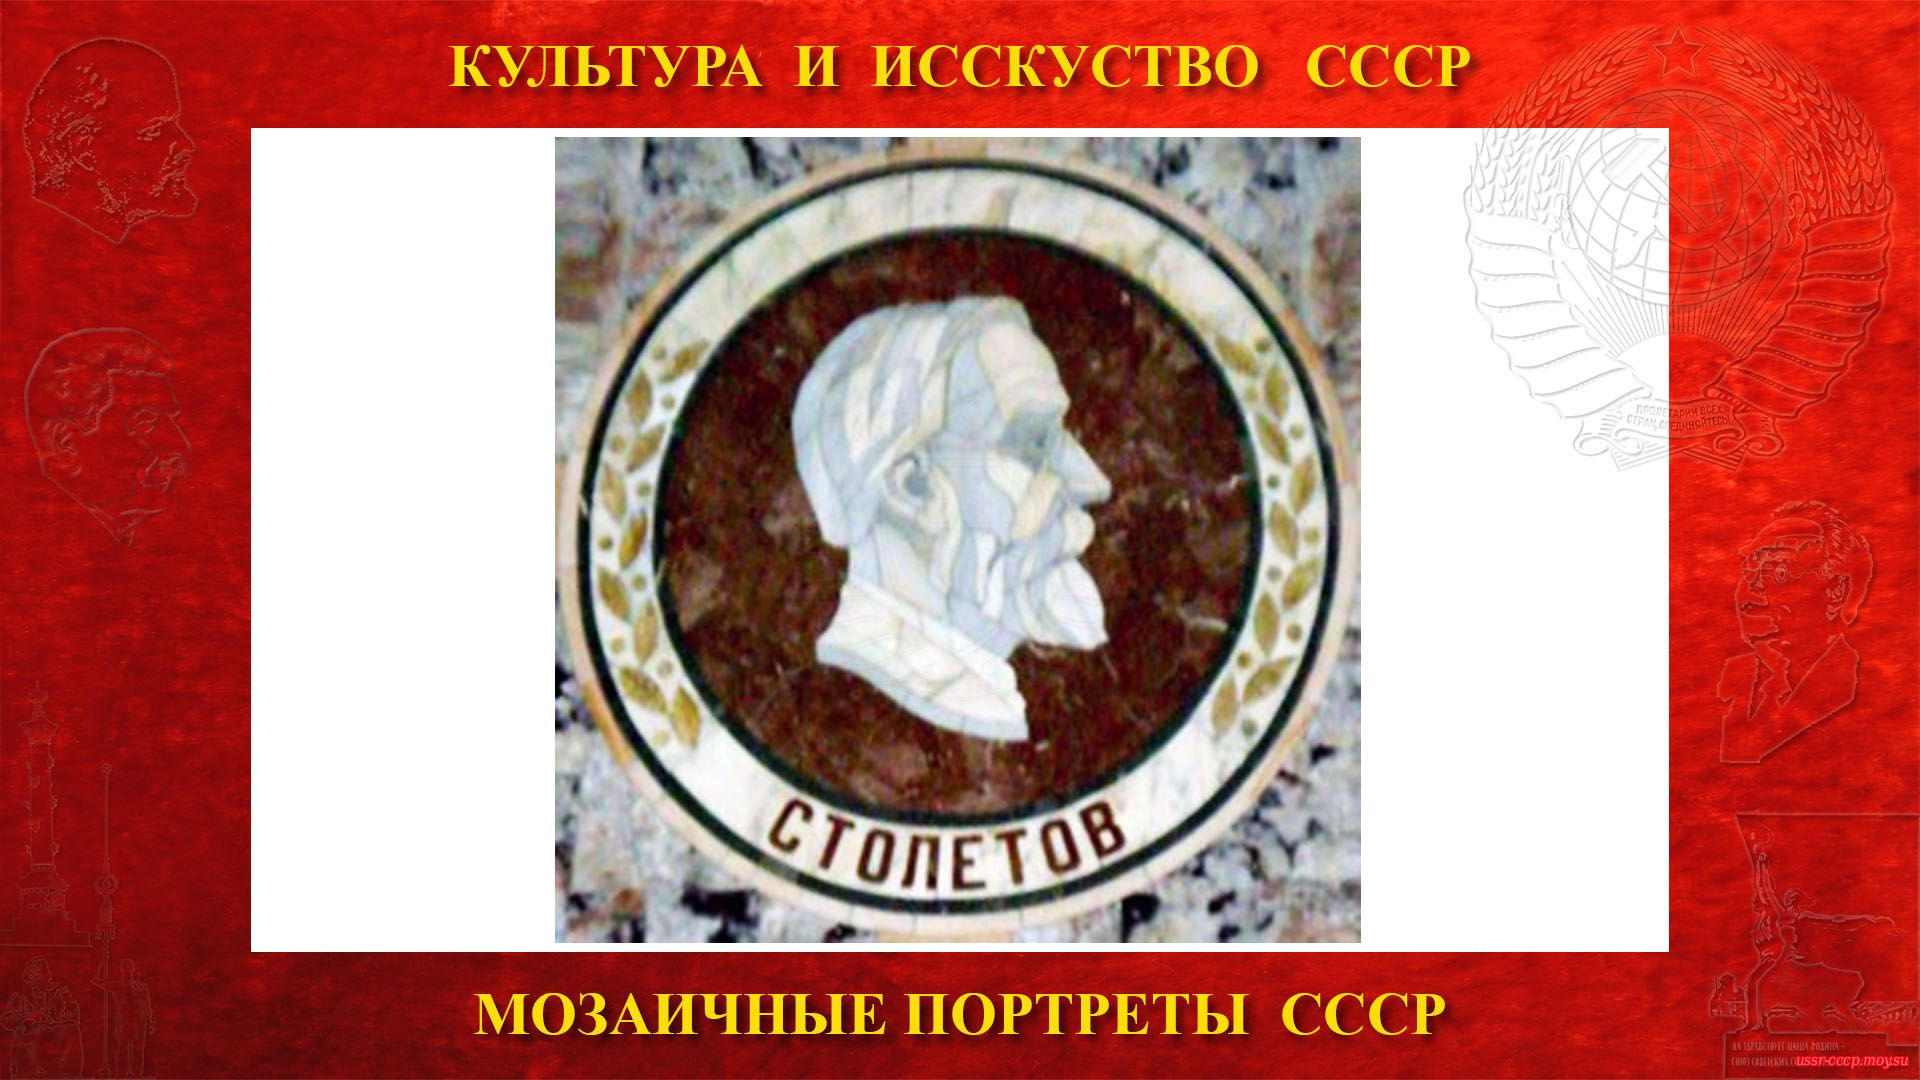 Мозаичный портрет Столетову А.Г. на Ленинских горах в ГЗ МГУ (Москва 1953) (повествование)